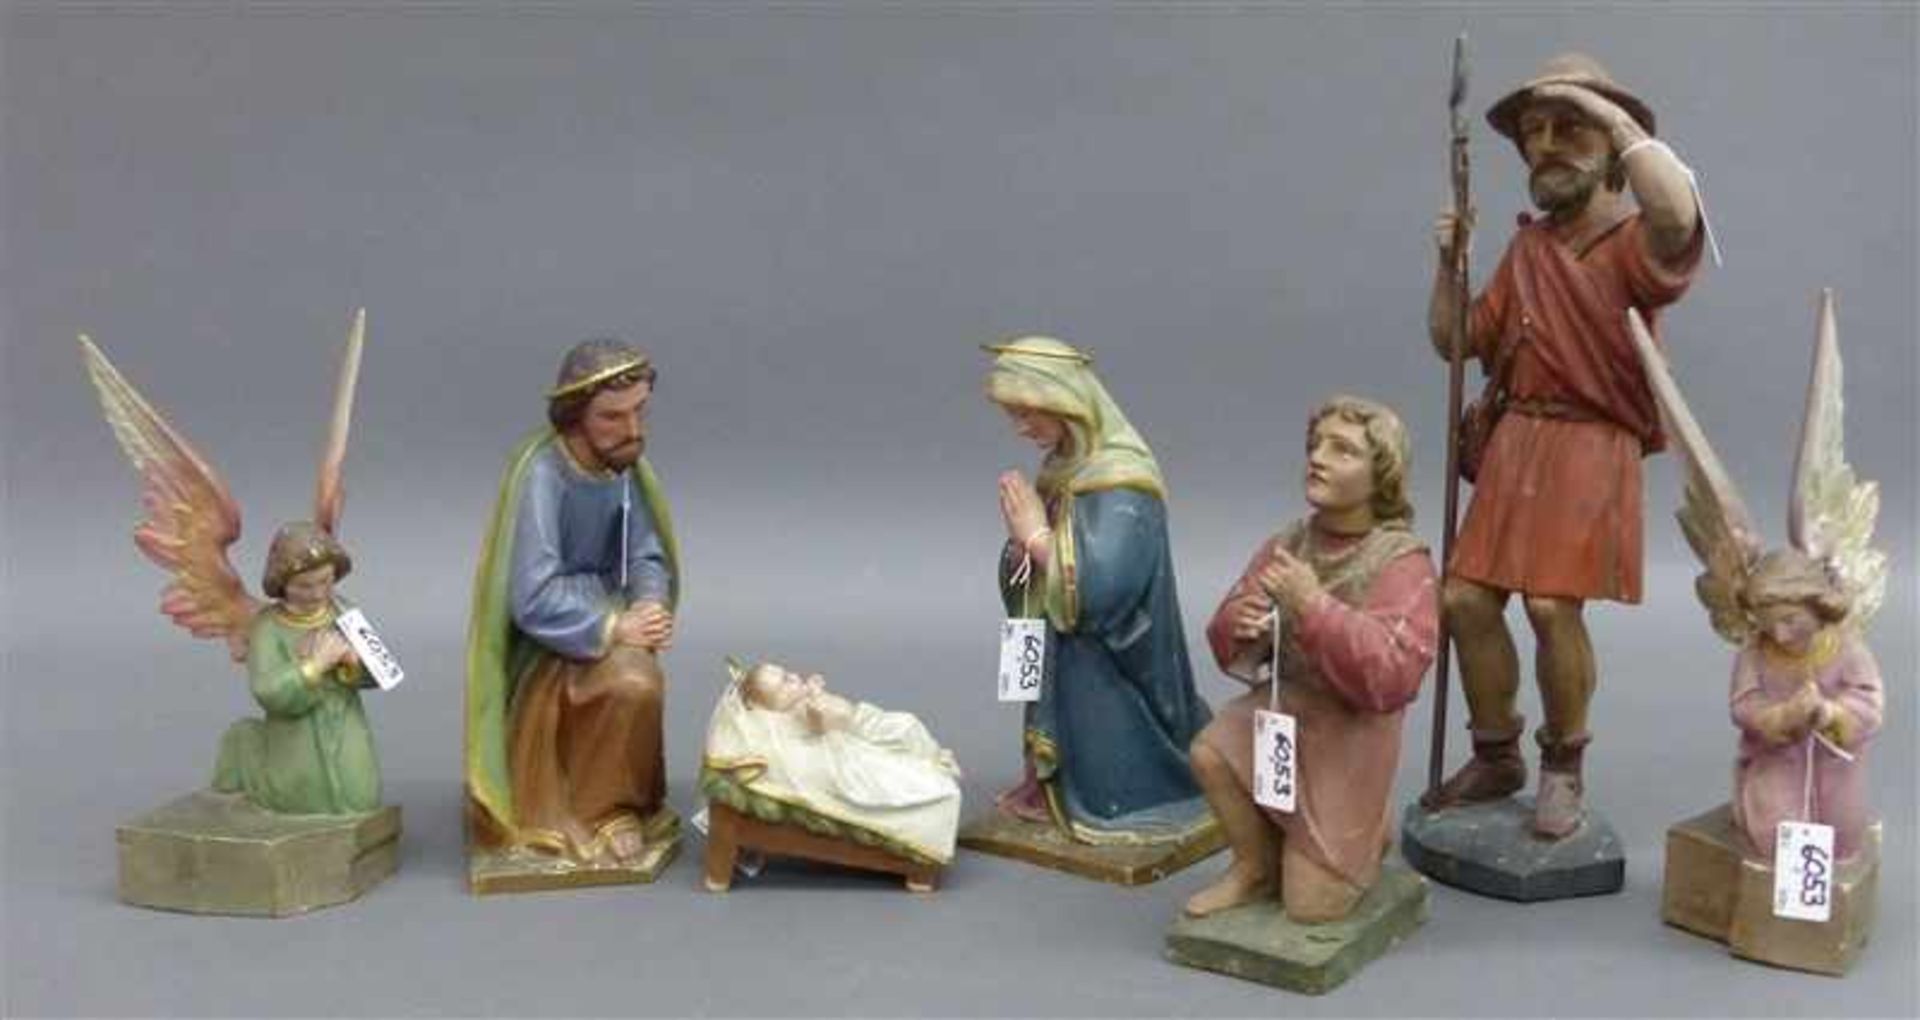 KrippenfigurenHolz, geschnitzt, gefasst, Süddeutsch, 19. Jh., Maria und Joseph, Jesuskind, zwei